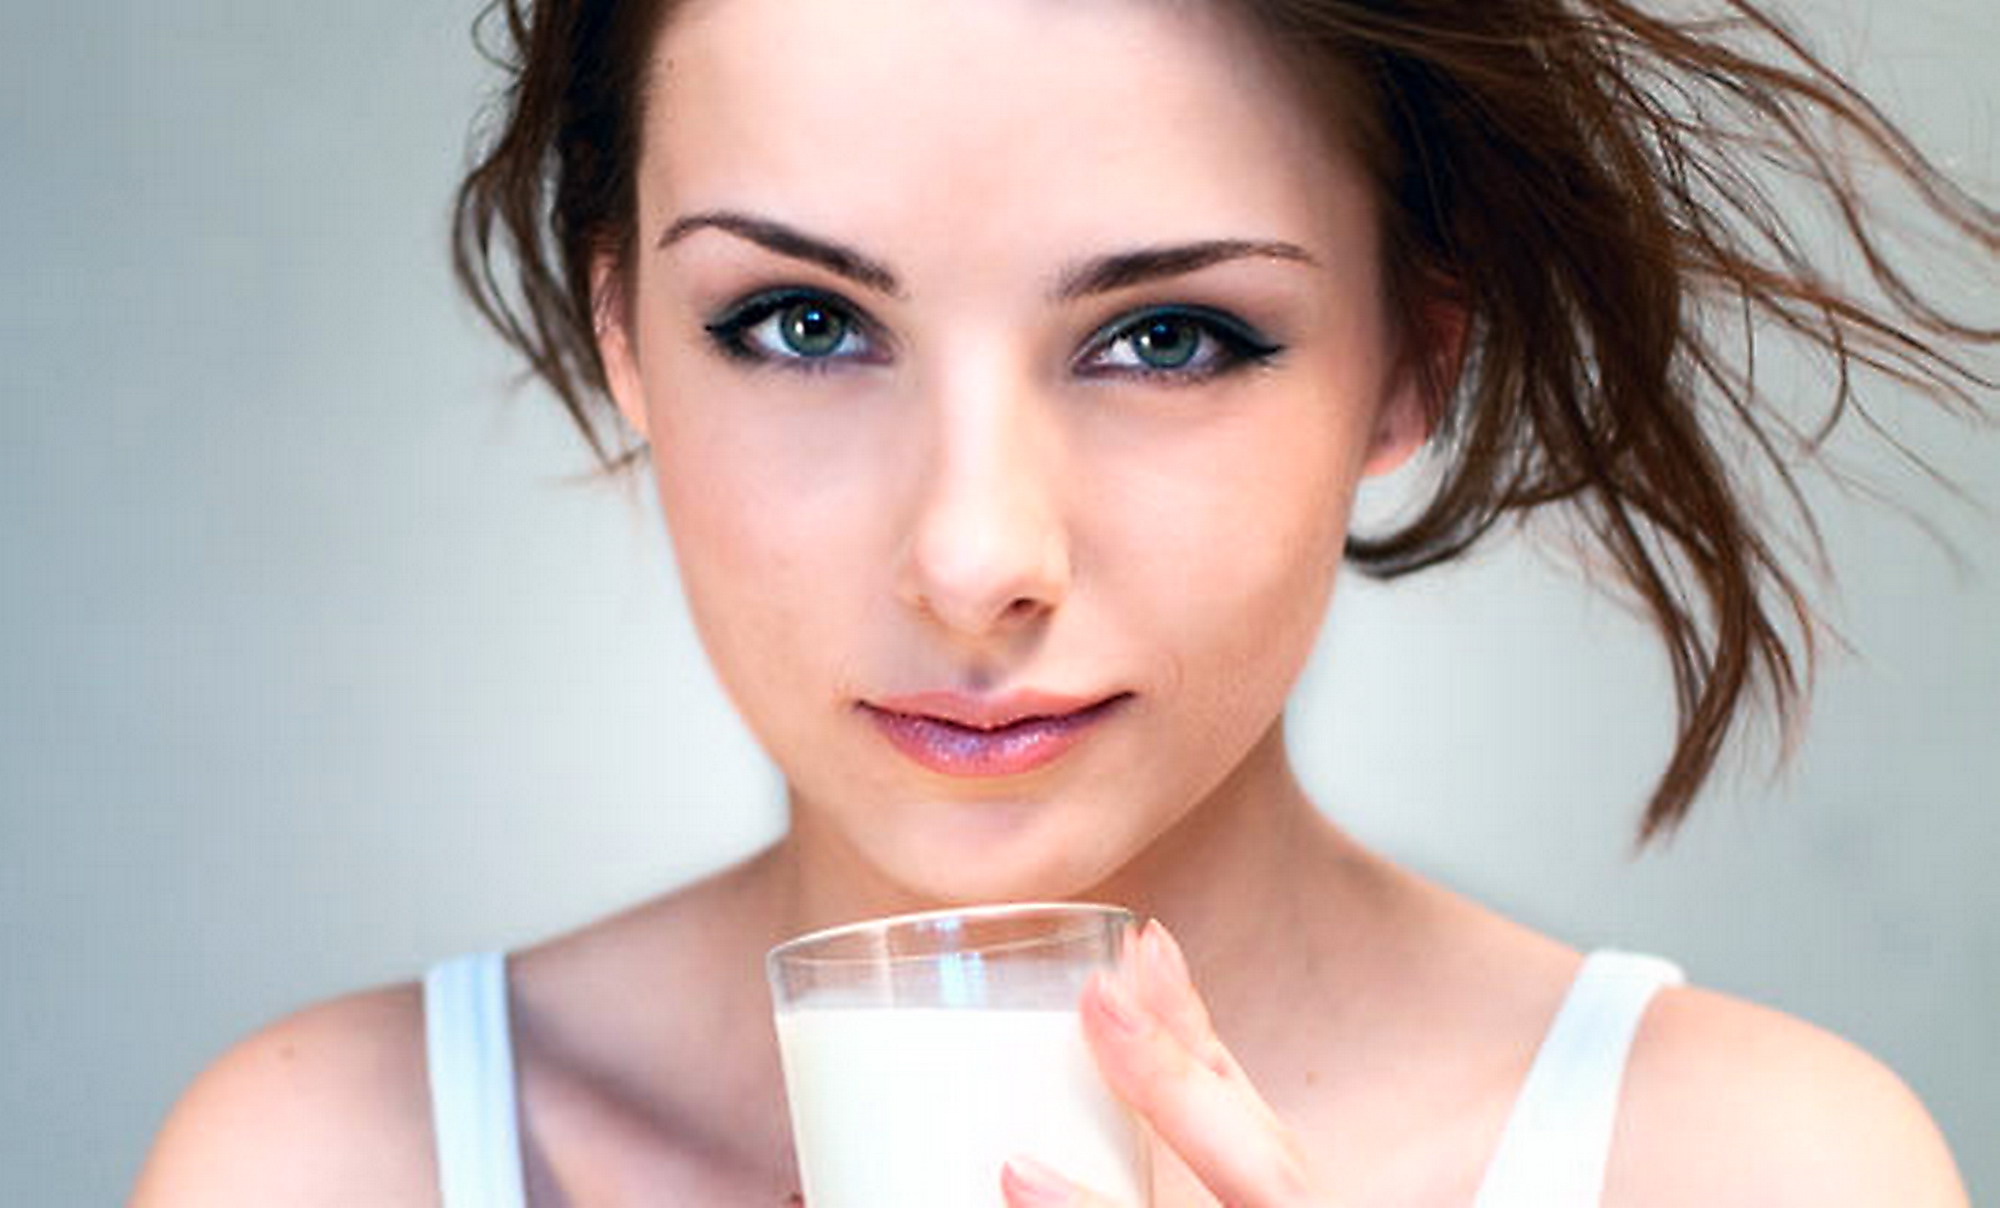 Il latte non rinforza le ossa: sfatato un falso mito